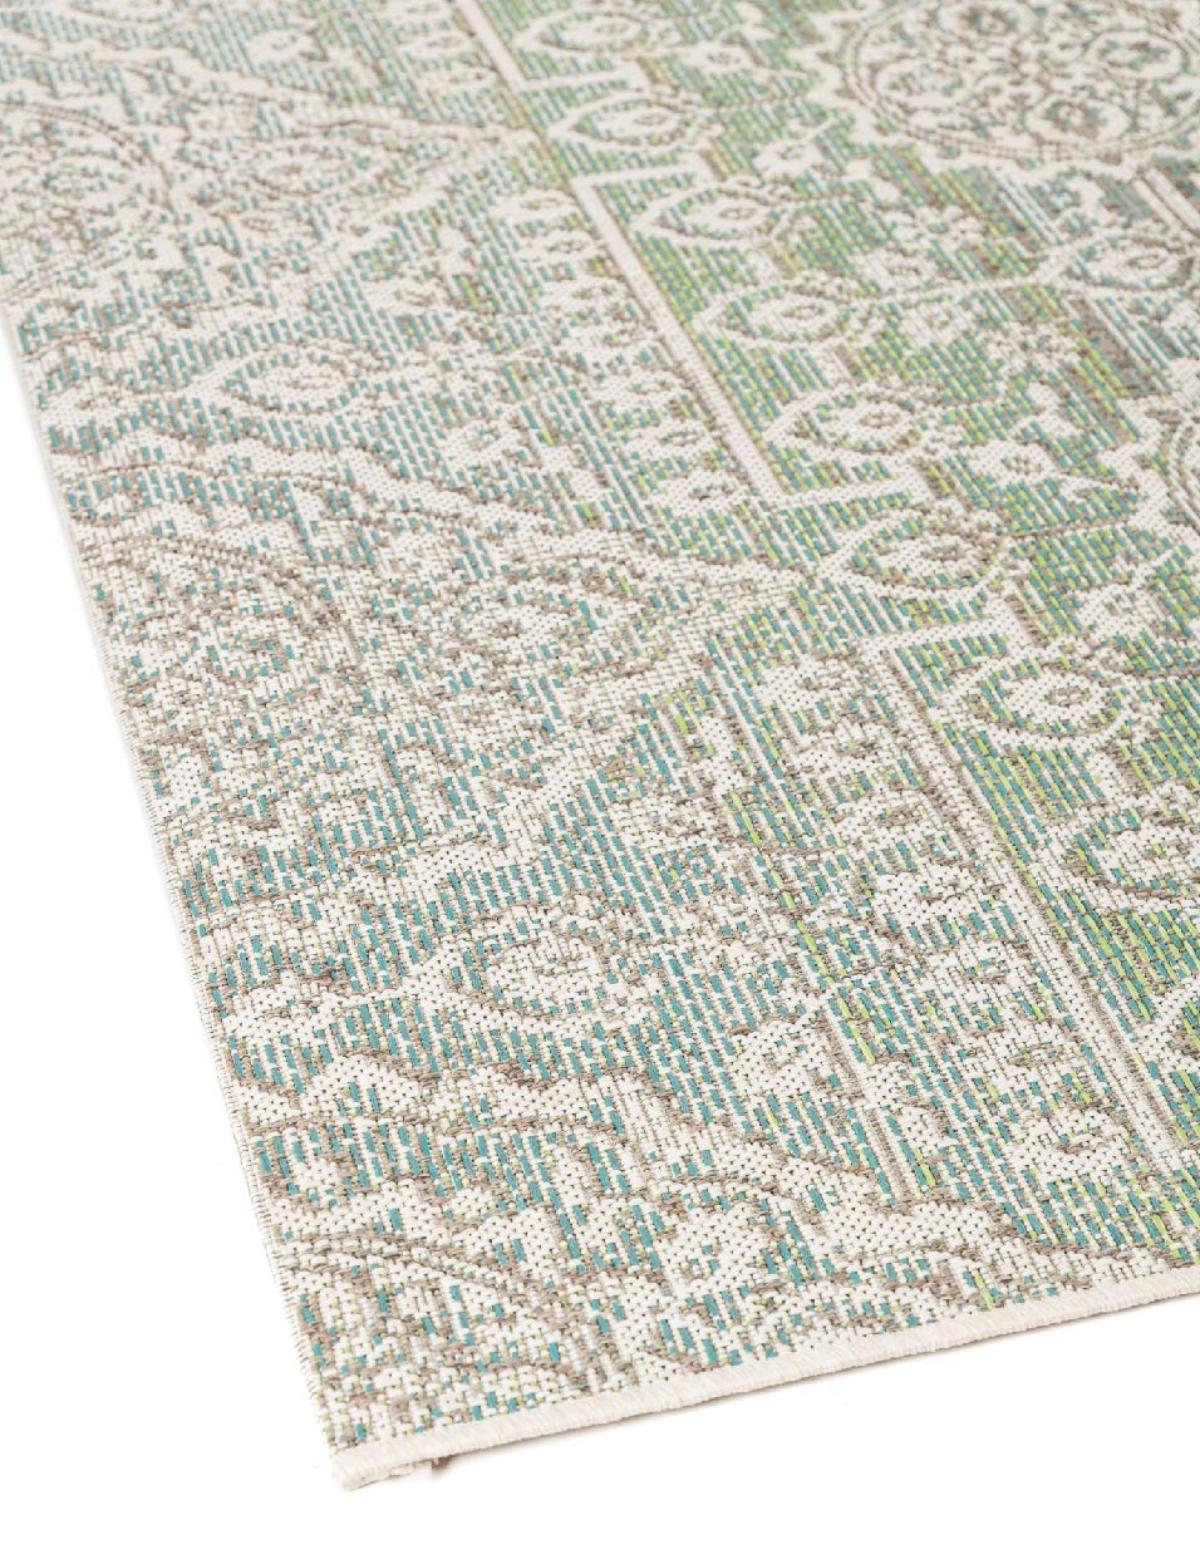 Dies ist der Trivoli Teppich von Brom-Living in Grün